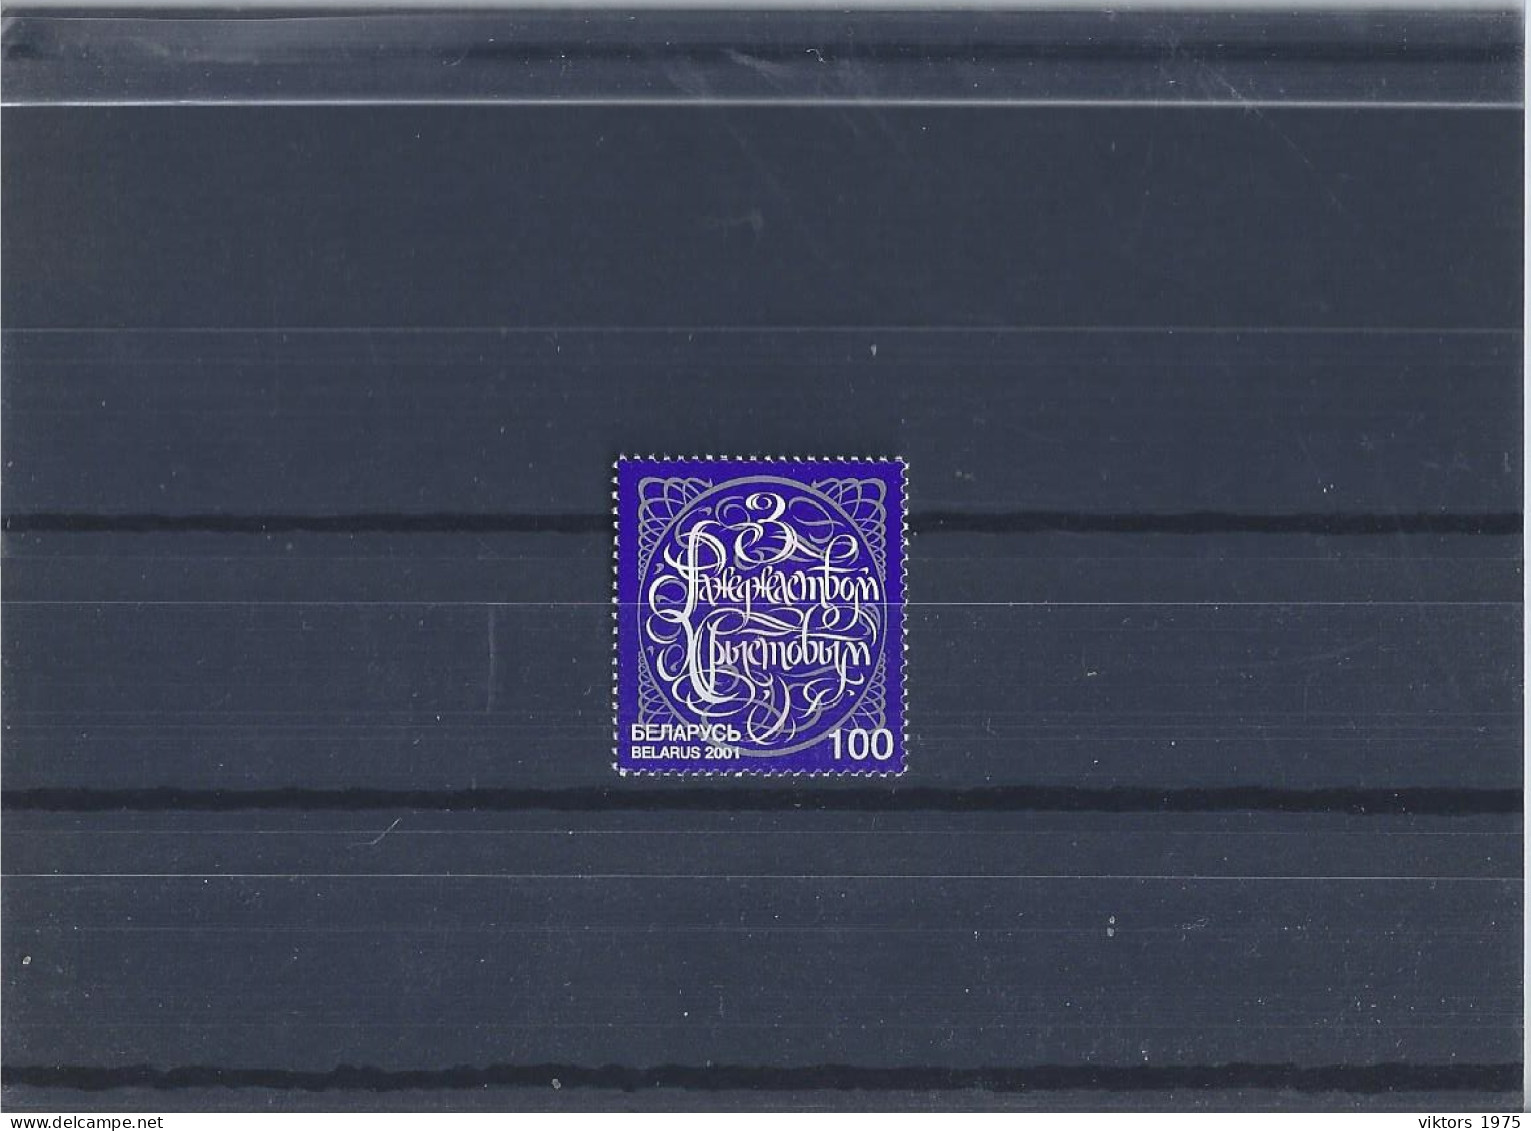 MNH Stamp Nr.435 In MICHEL Catalog - Belarus